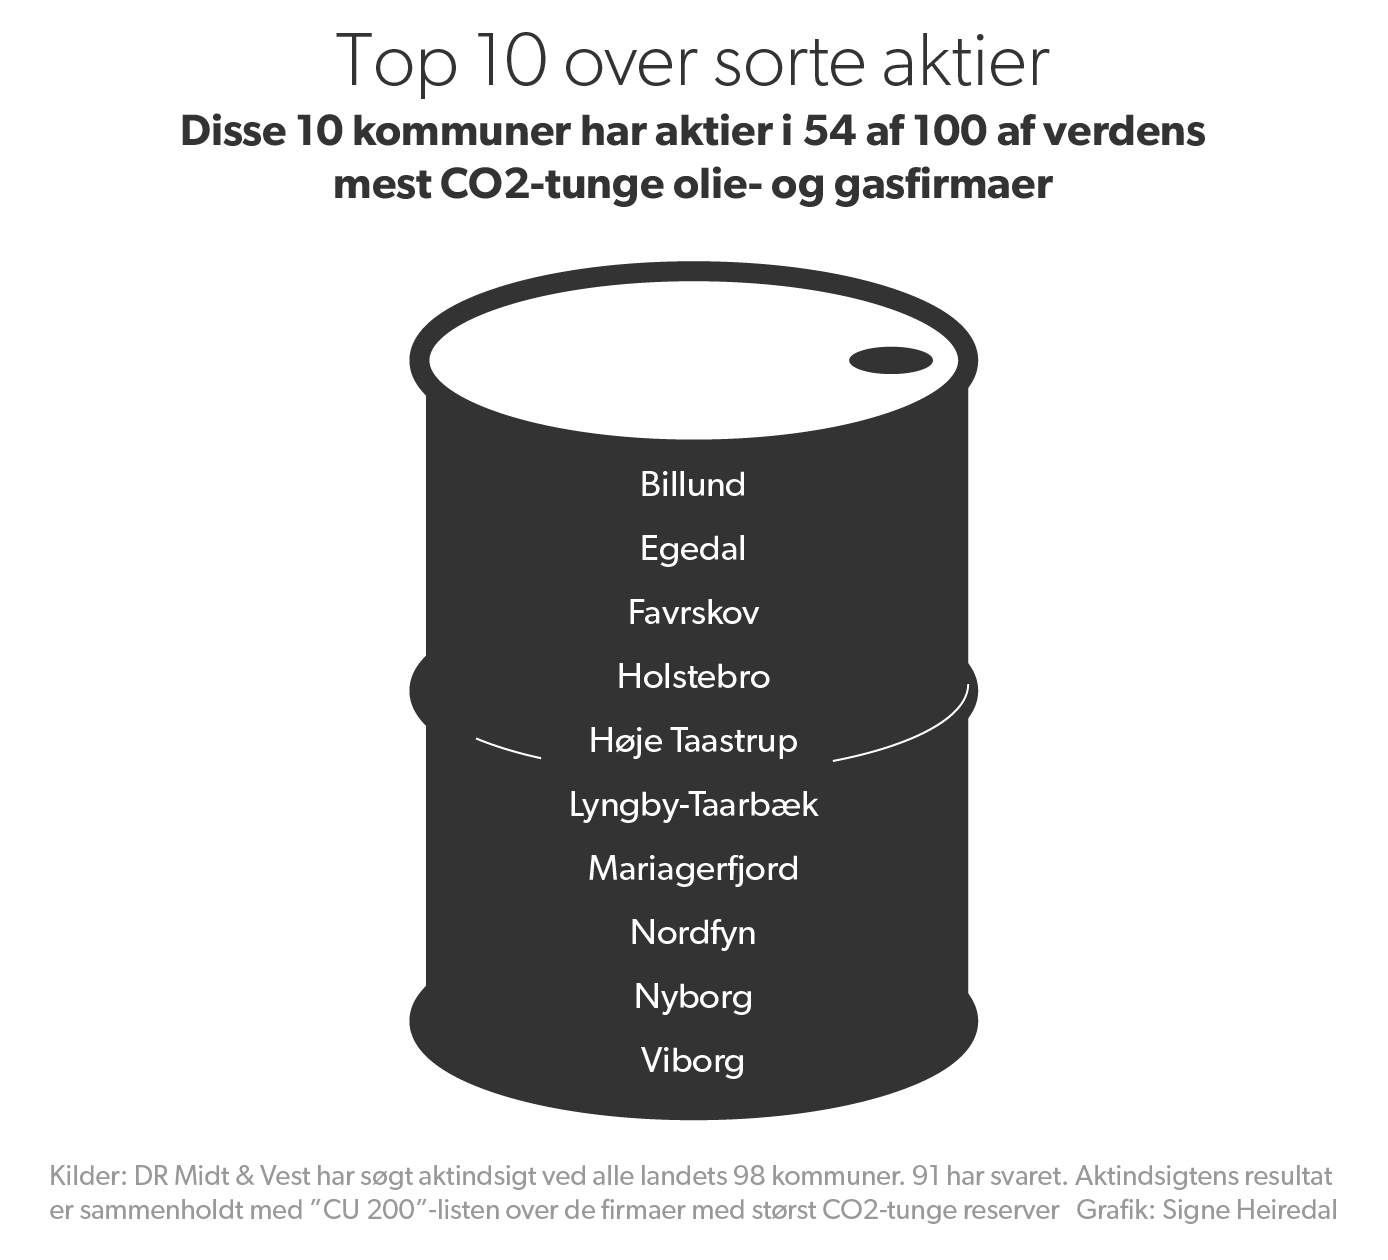 Flere danske har aktier i verdens mest CO2-tunge virksomheder Midt- og Vestjylland | DR